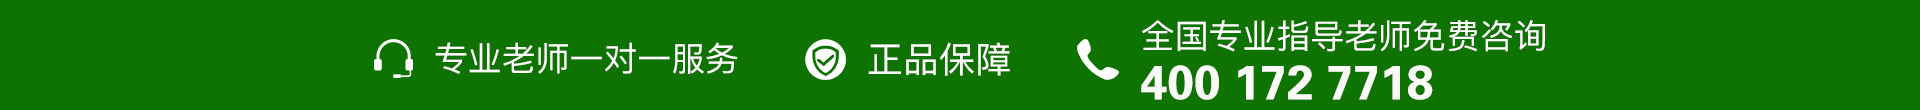 绿色电话-banner图下方-PC - 副本 (5).jpg